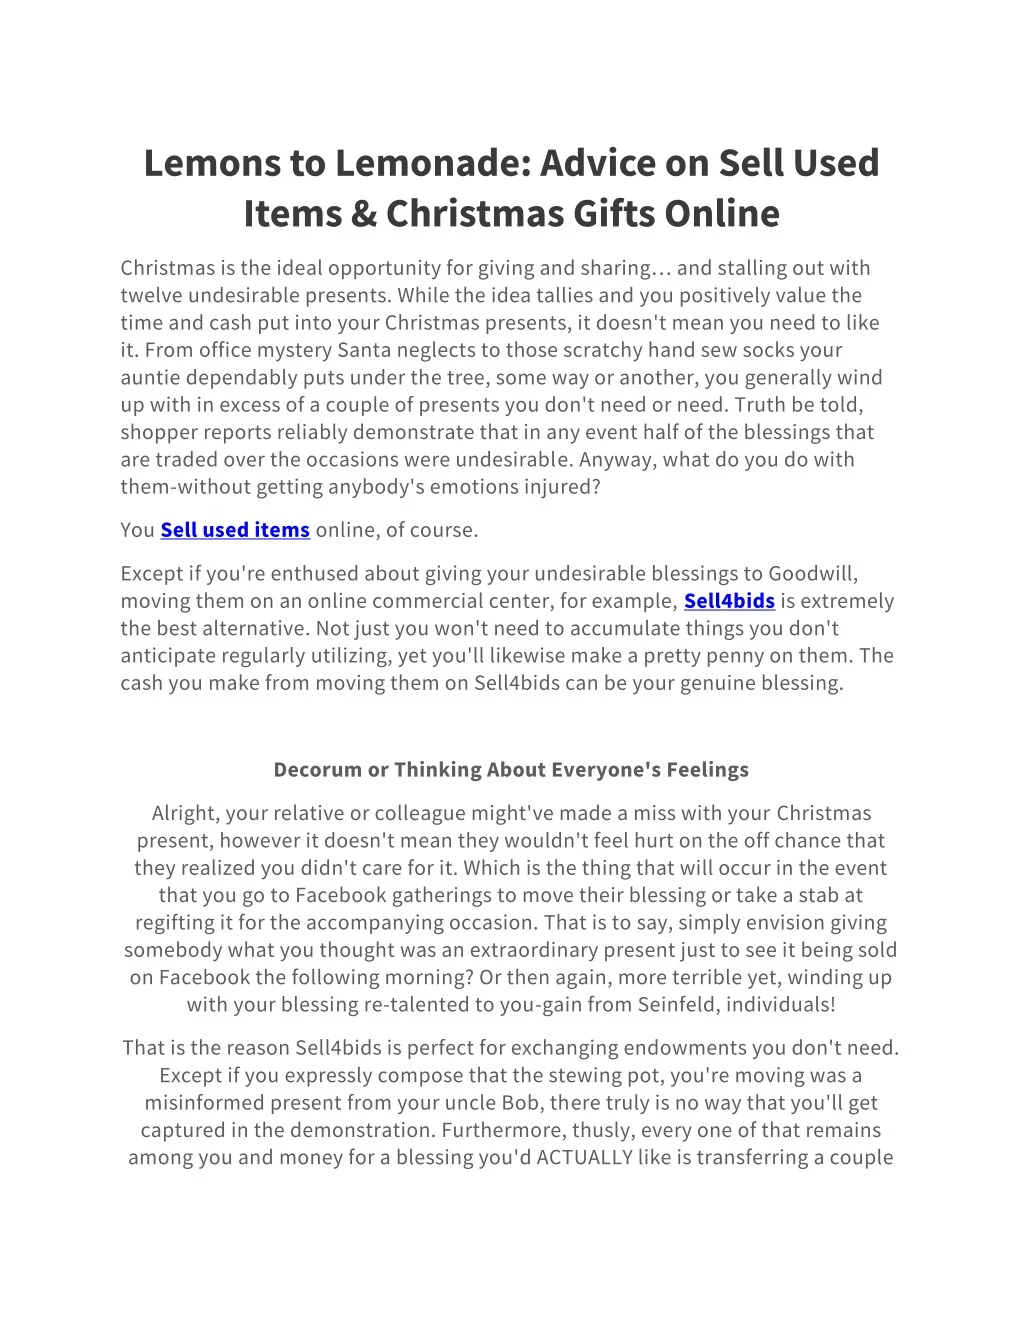 lemons to lemonade advice on sell used items